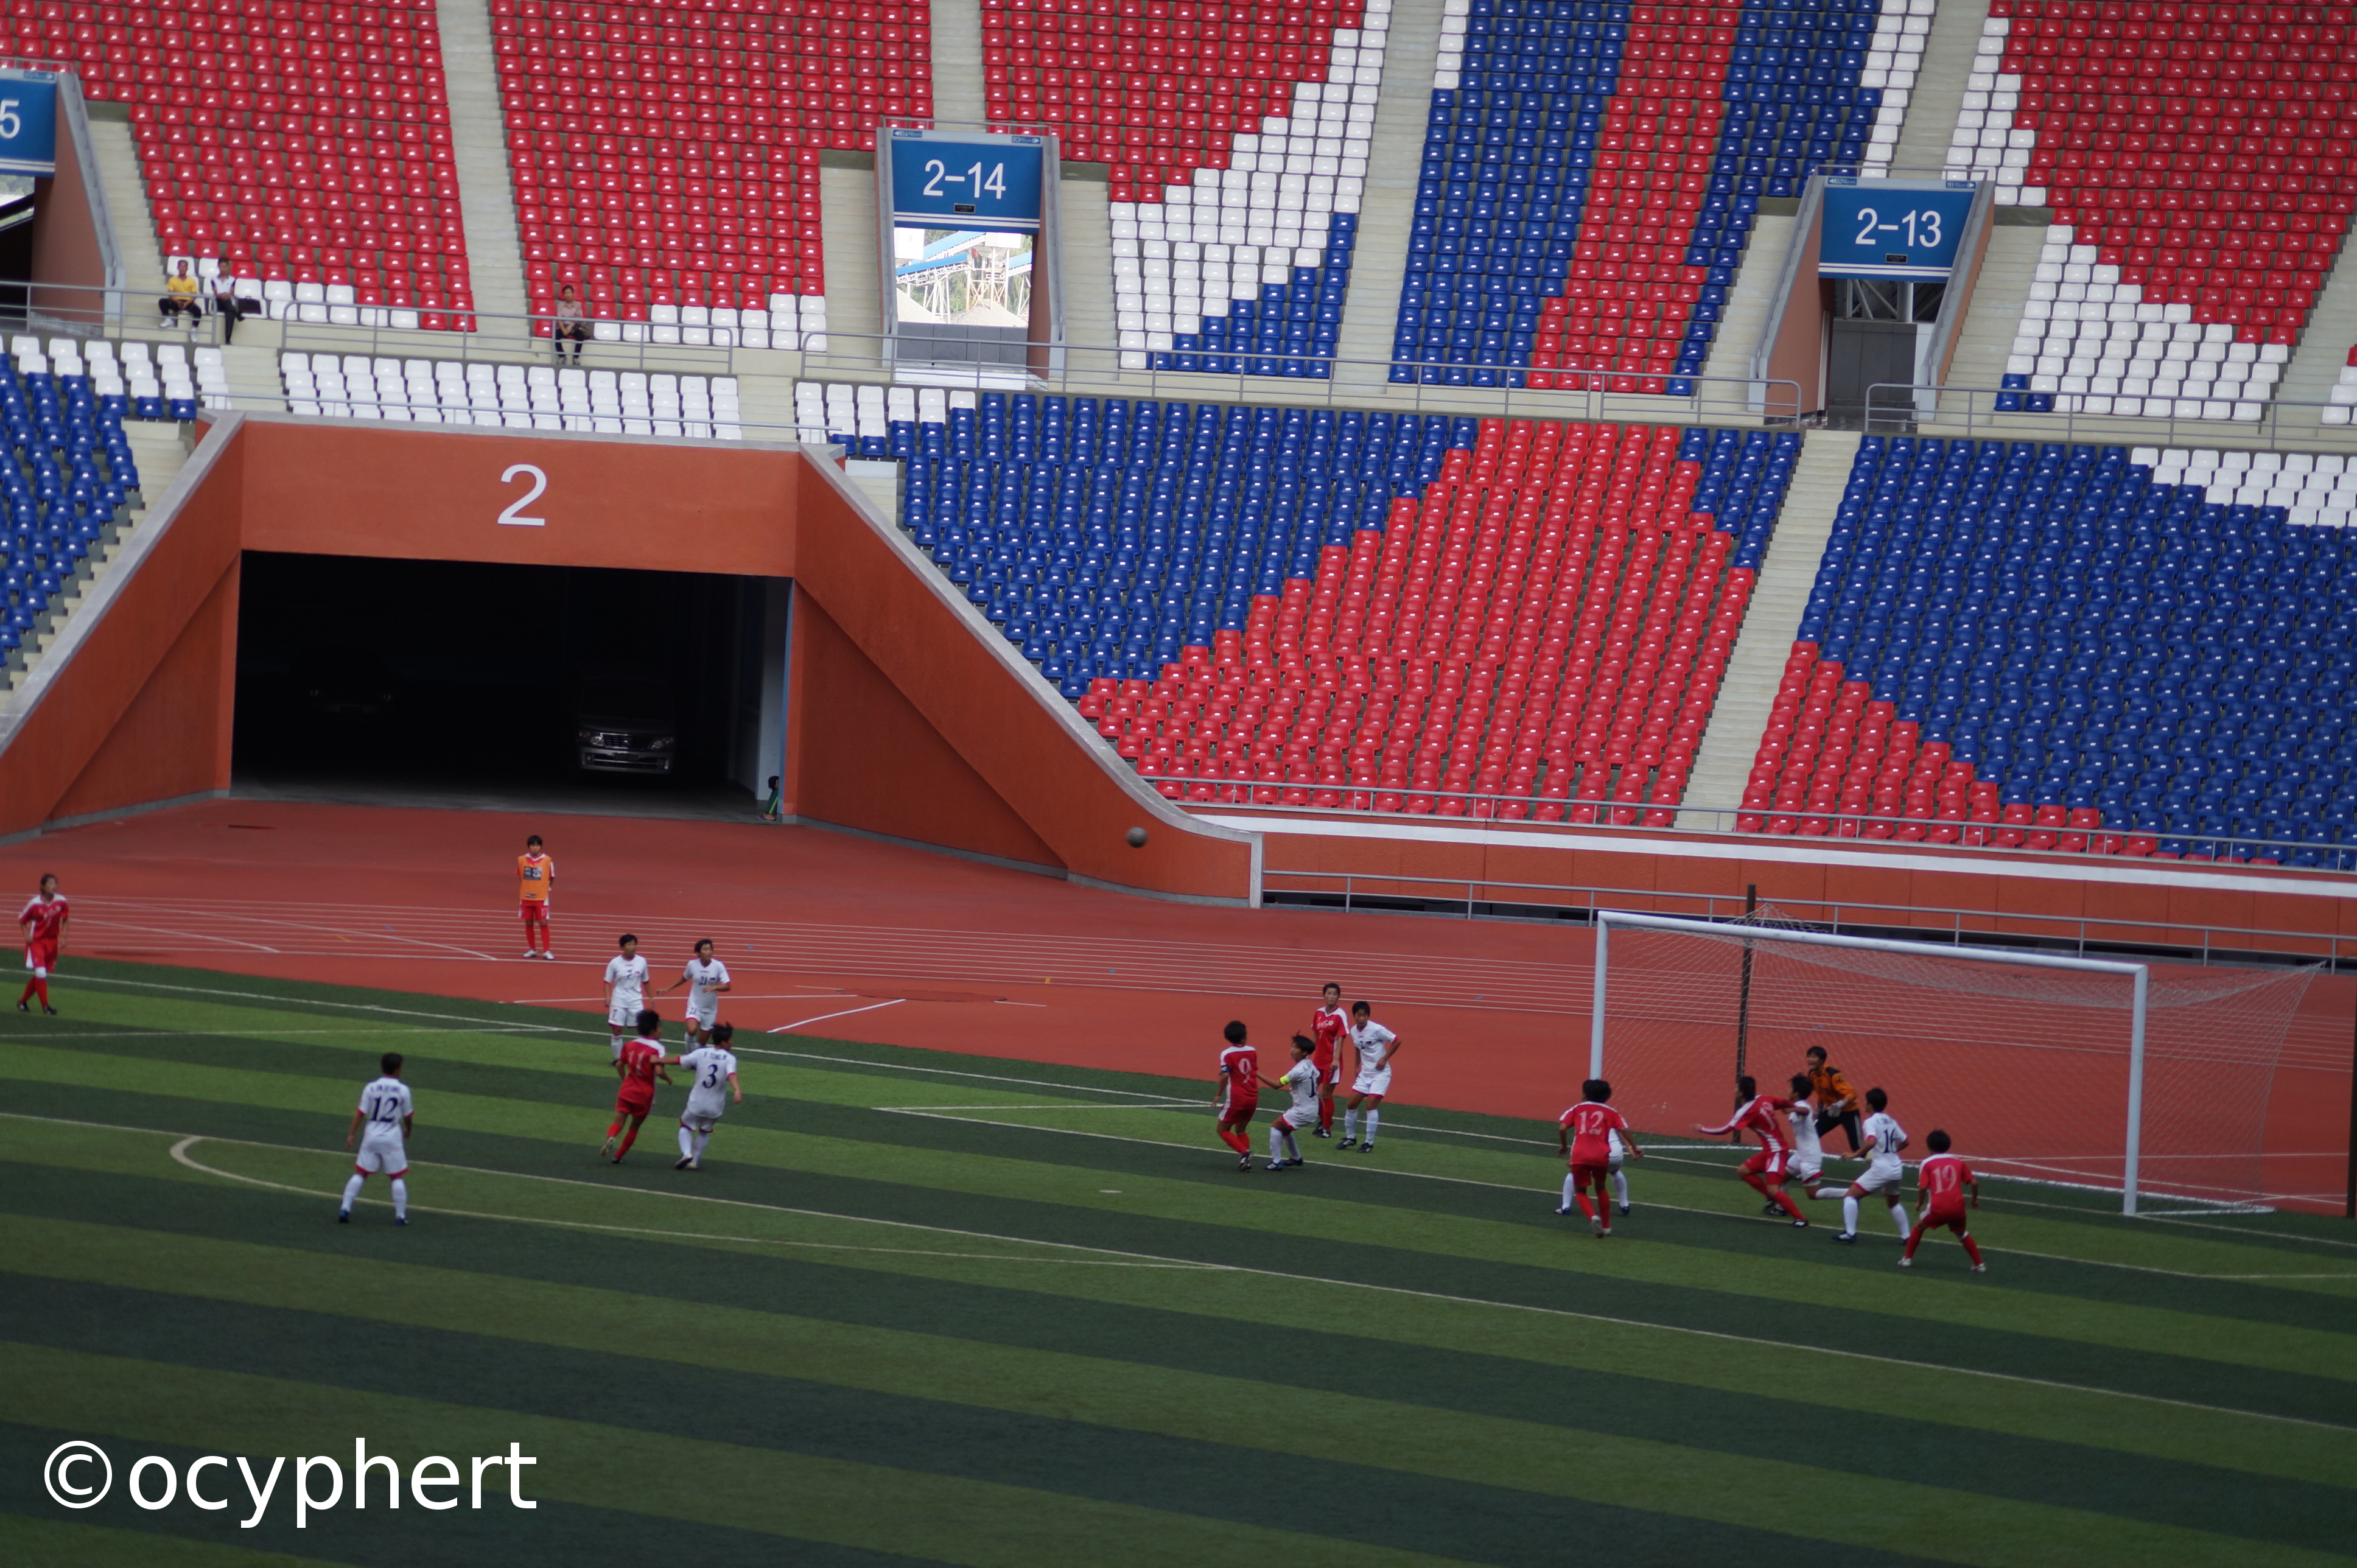 Fußballerinnen spielen auf dem Stadionfeld und erspielen eine Torchance. Das gesamte Stadion ist leer.